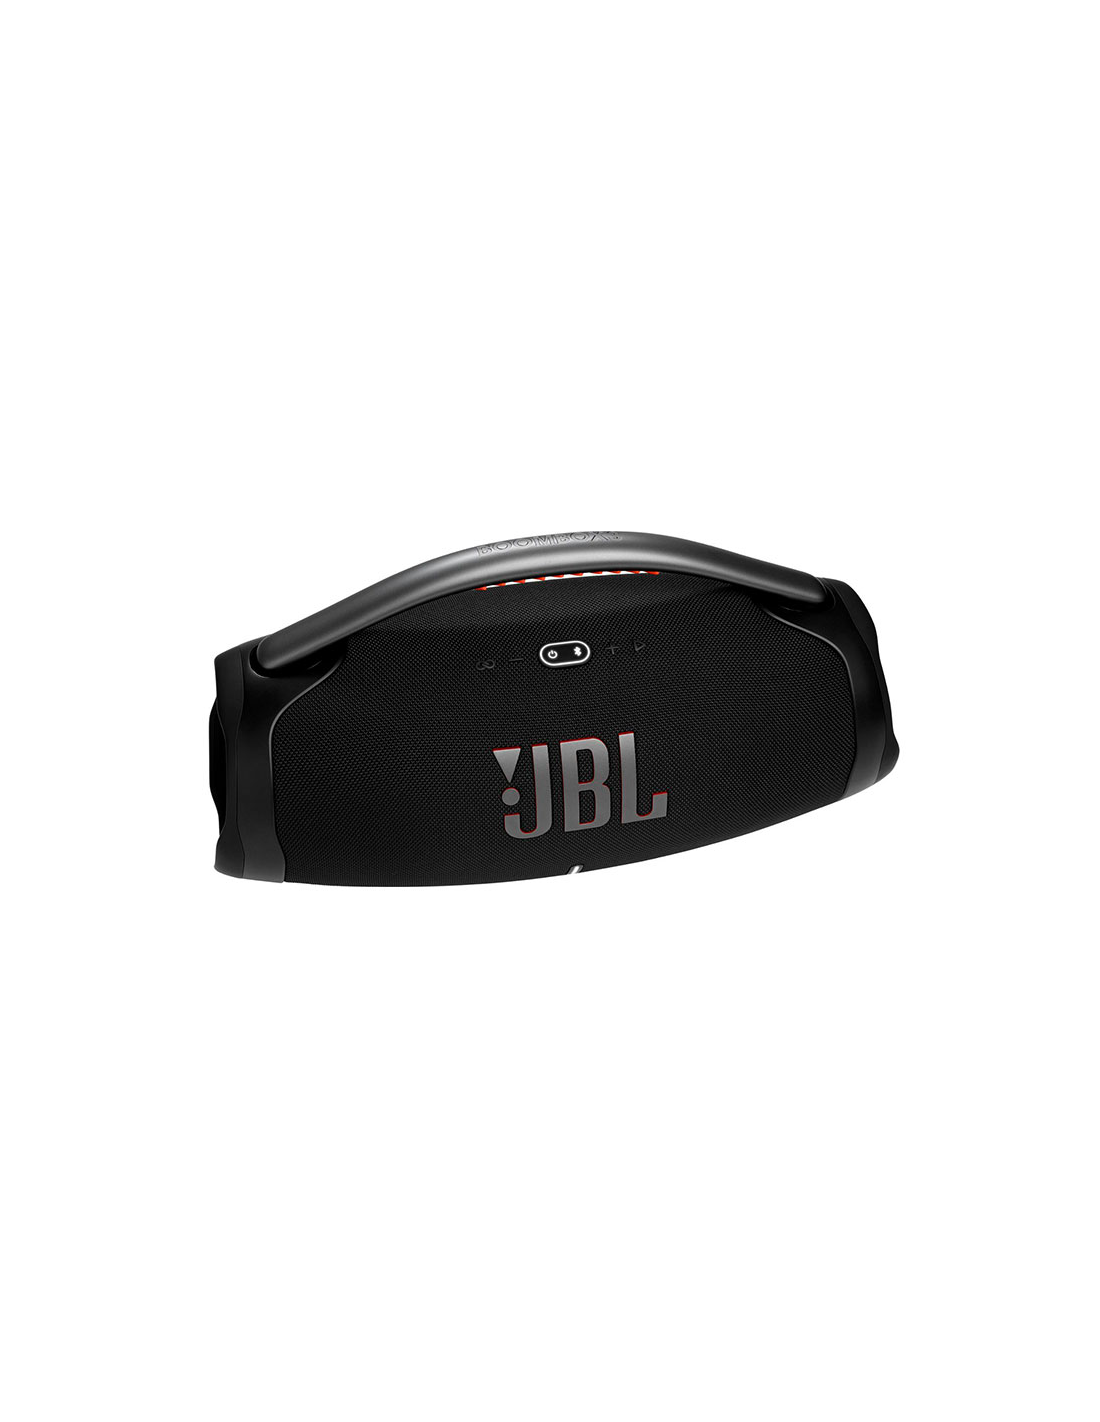 JBL Boombox 3 Altavoz Bluetooth inalámbrico